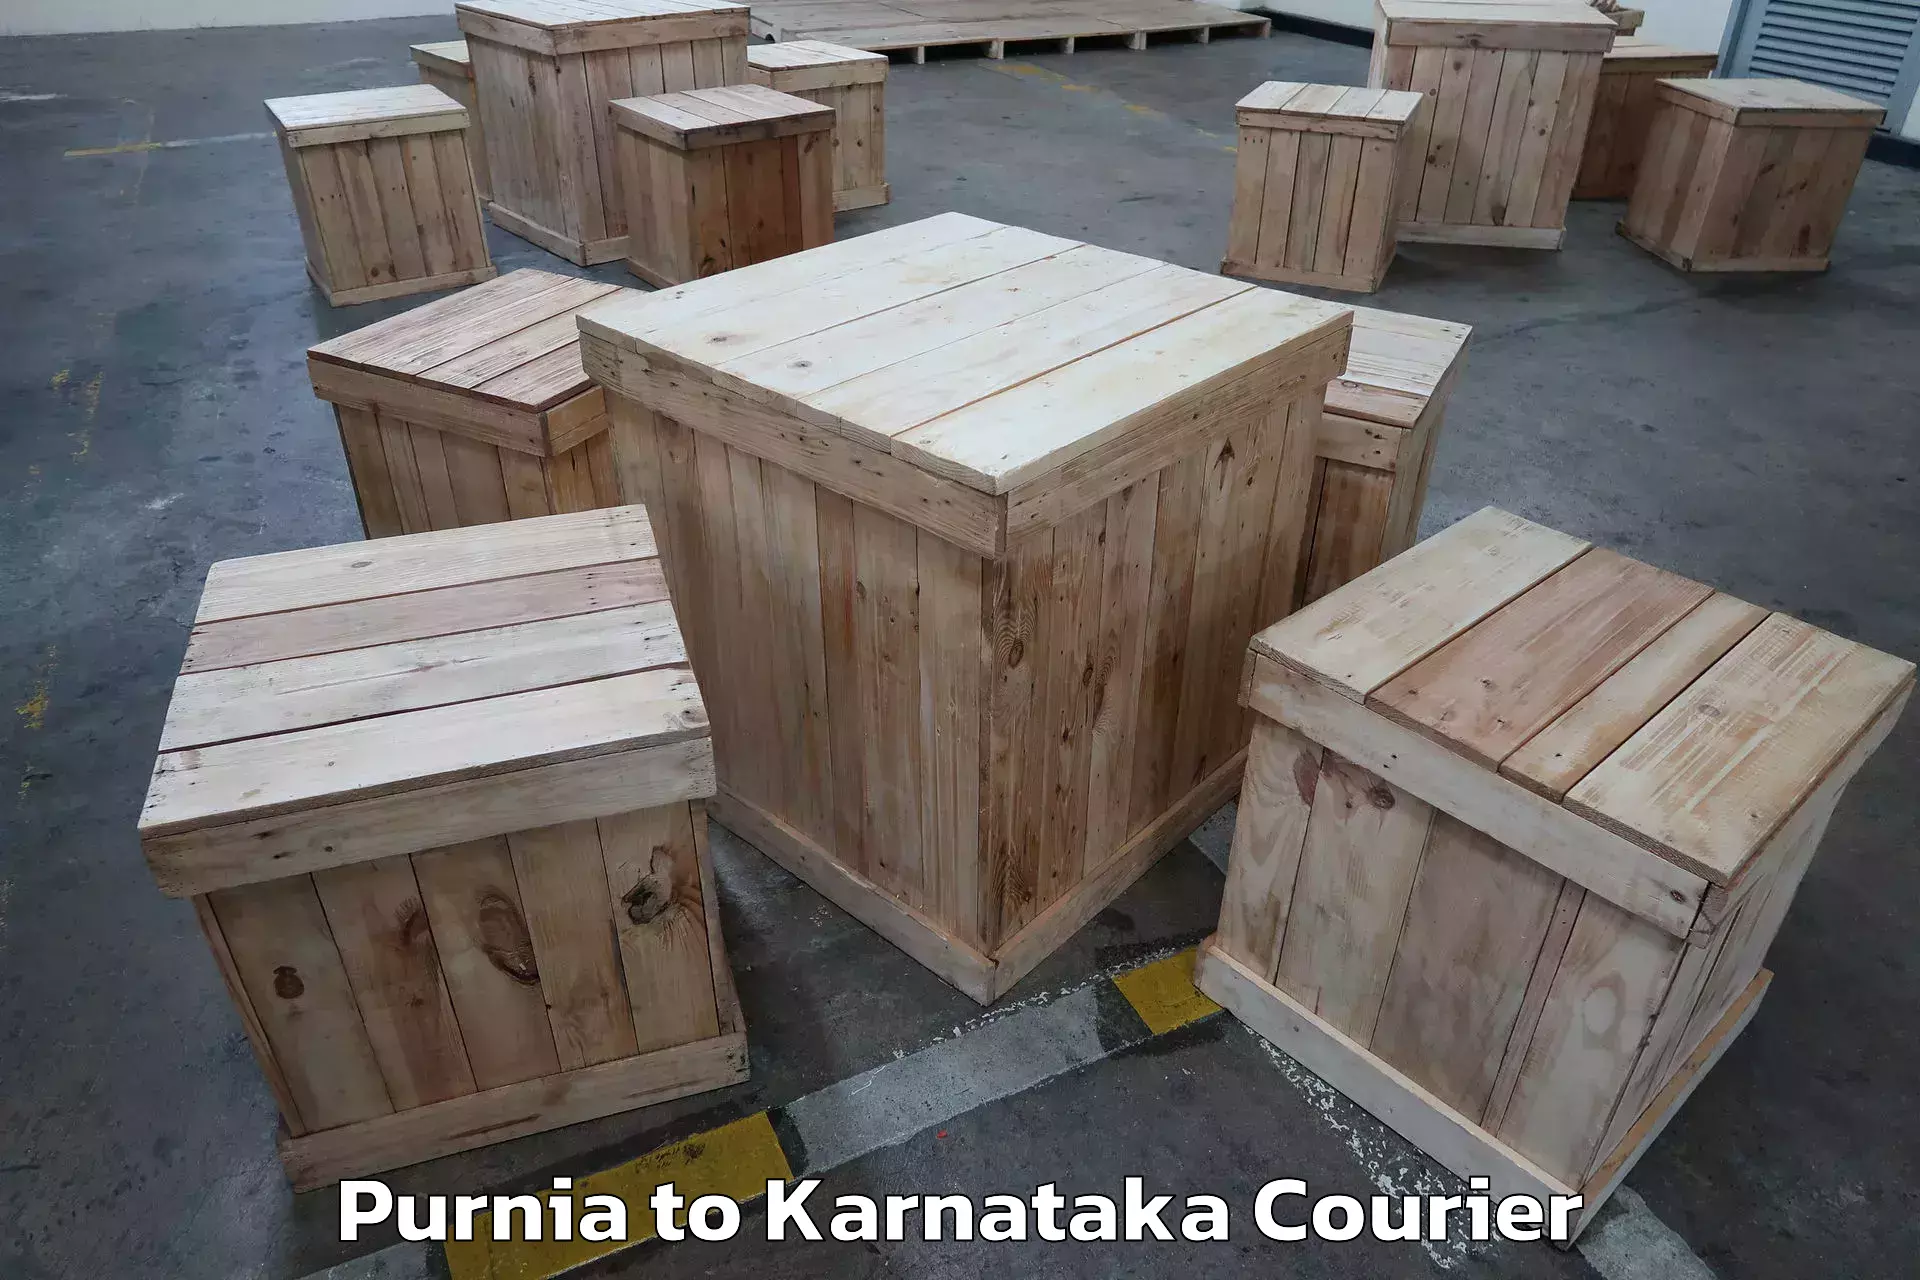 Furniture transport service Purnia to Mudarangady